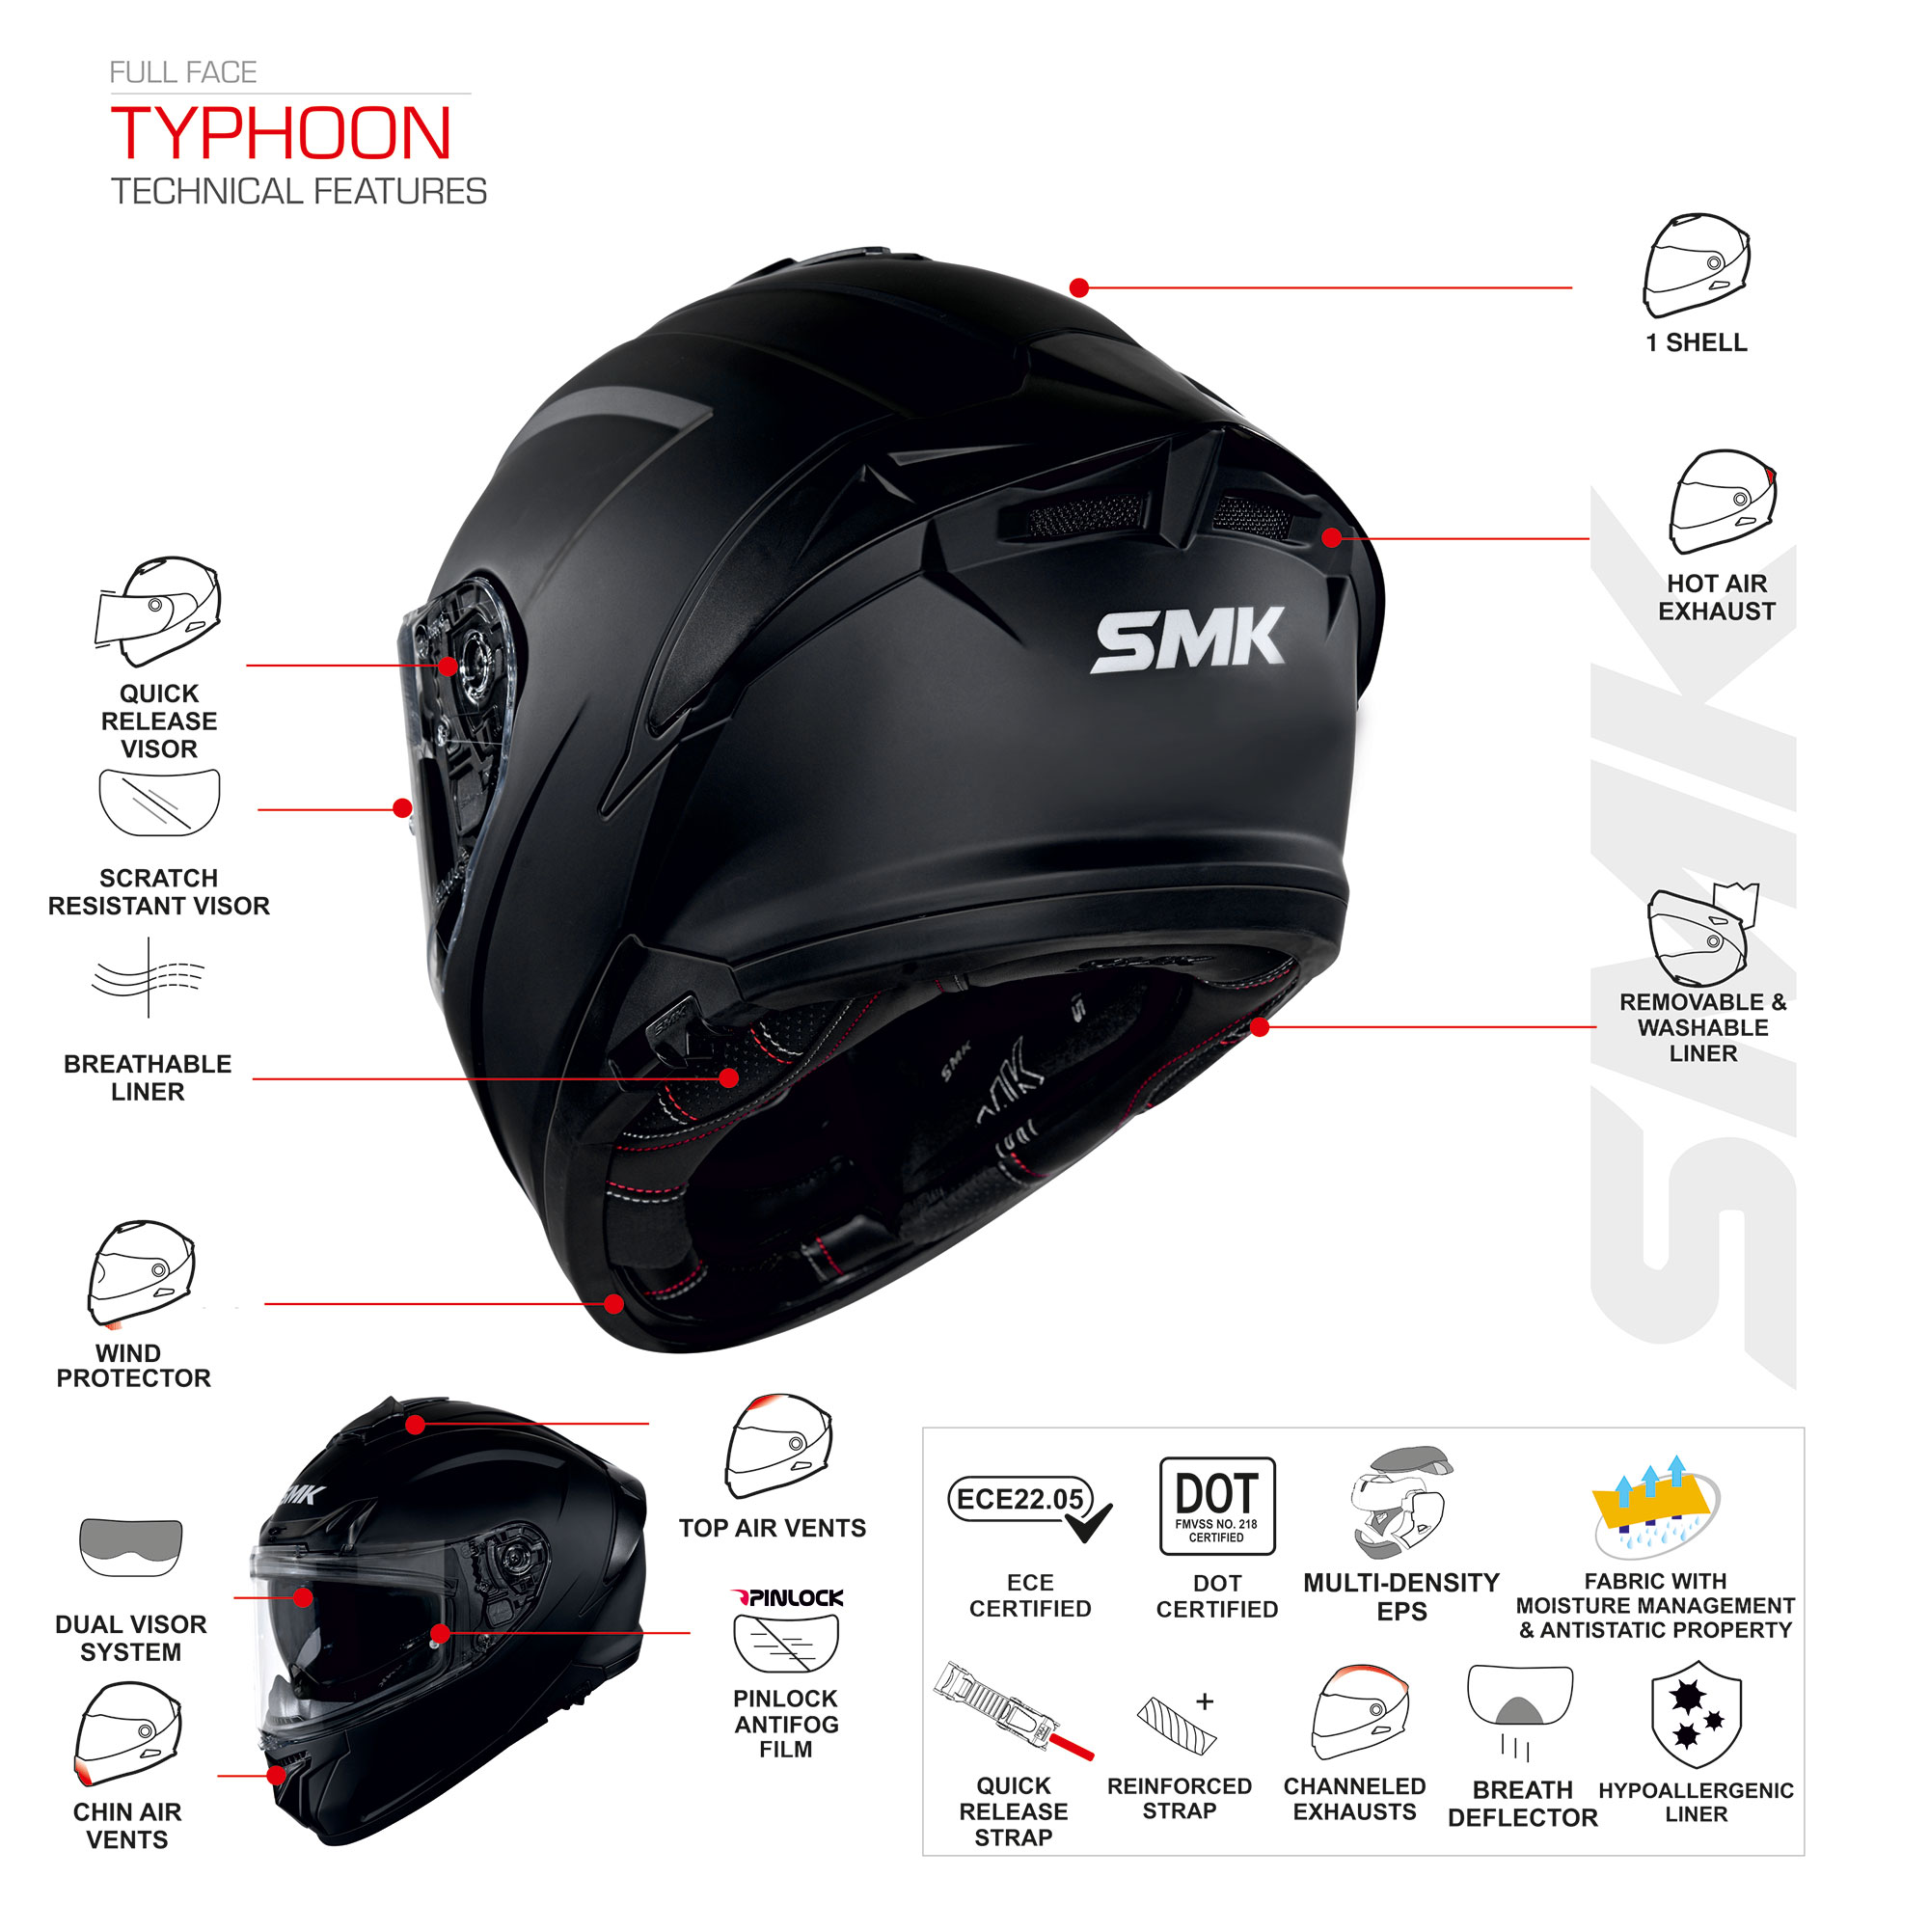 Typhoon Helmet Features